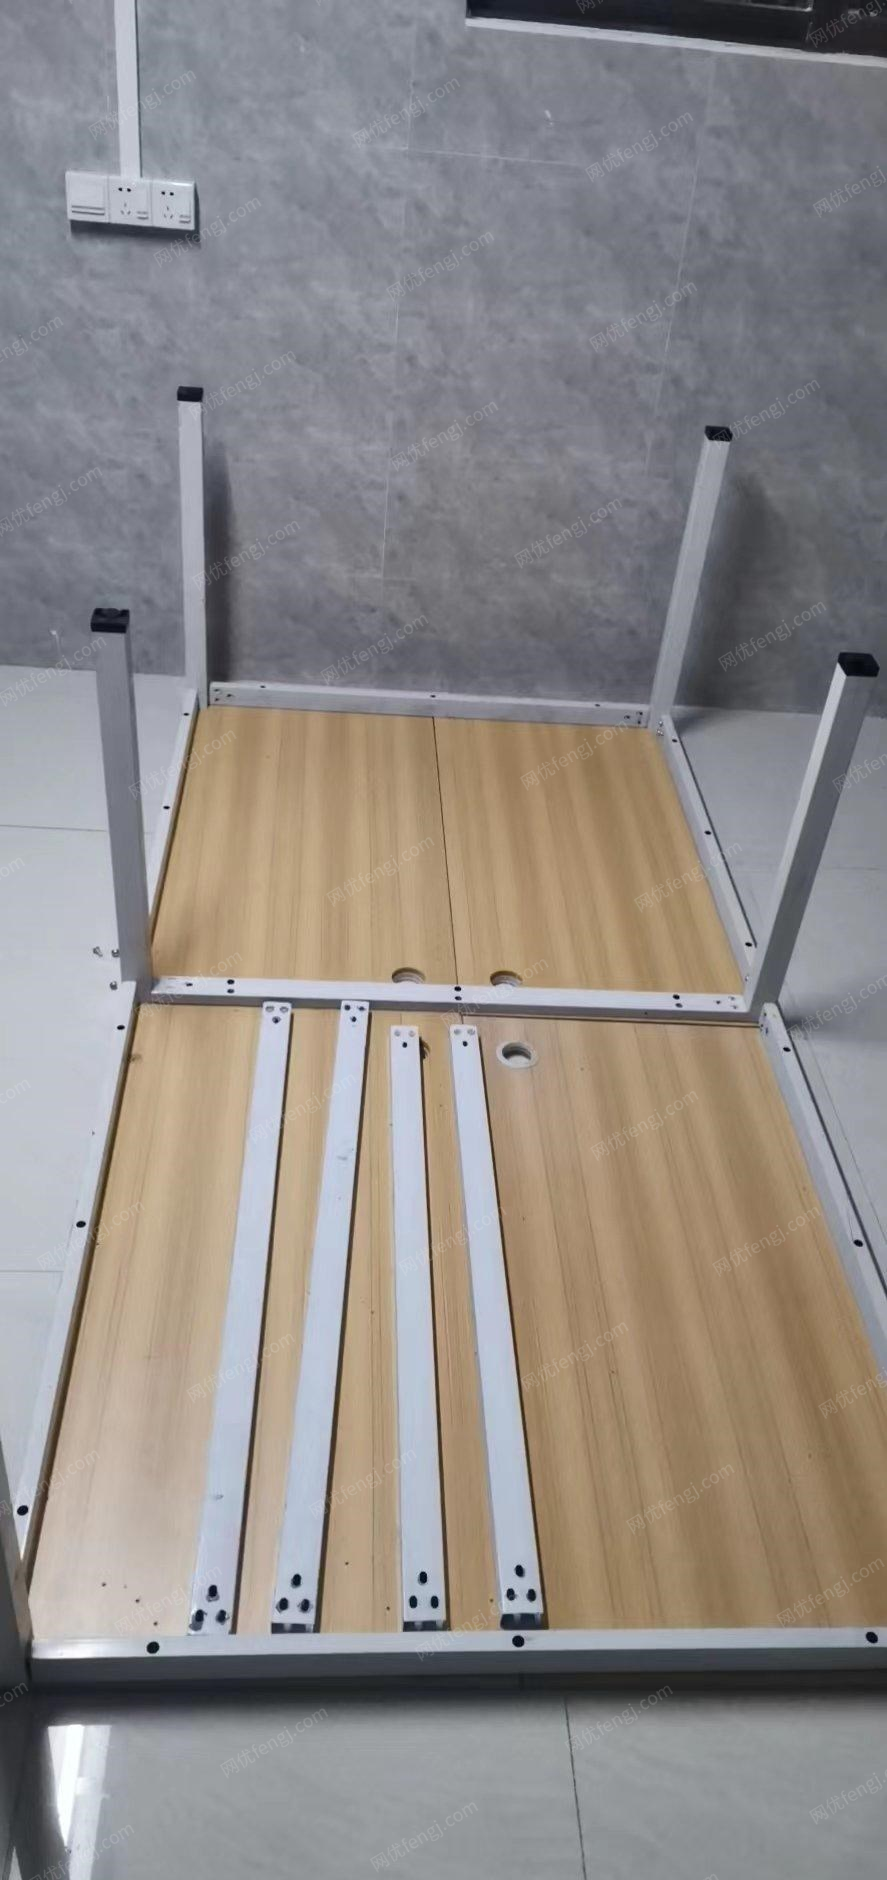 广东佛山出售1米2×0.6米×25mm厚桌子。方便拆装的，可办公可工作台。